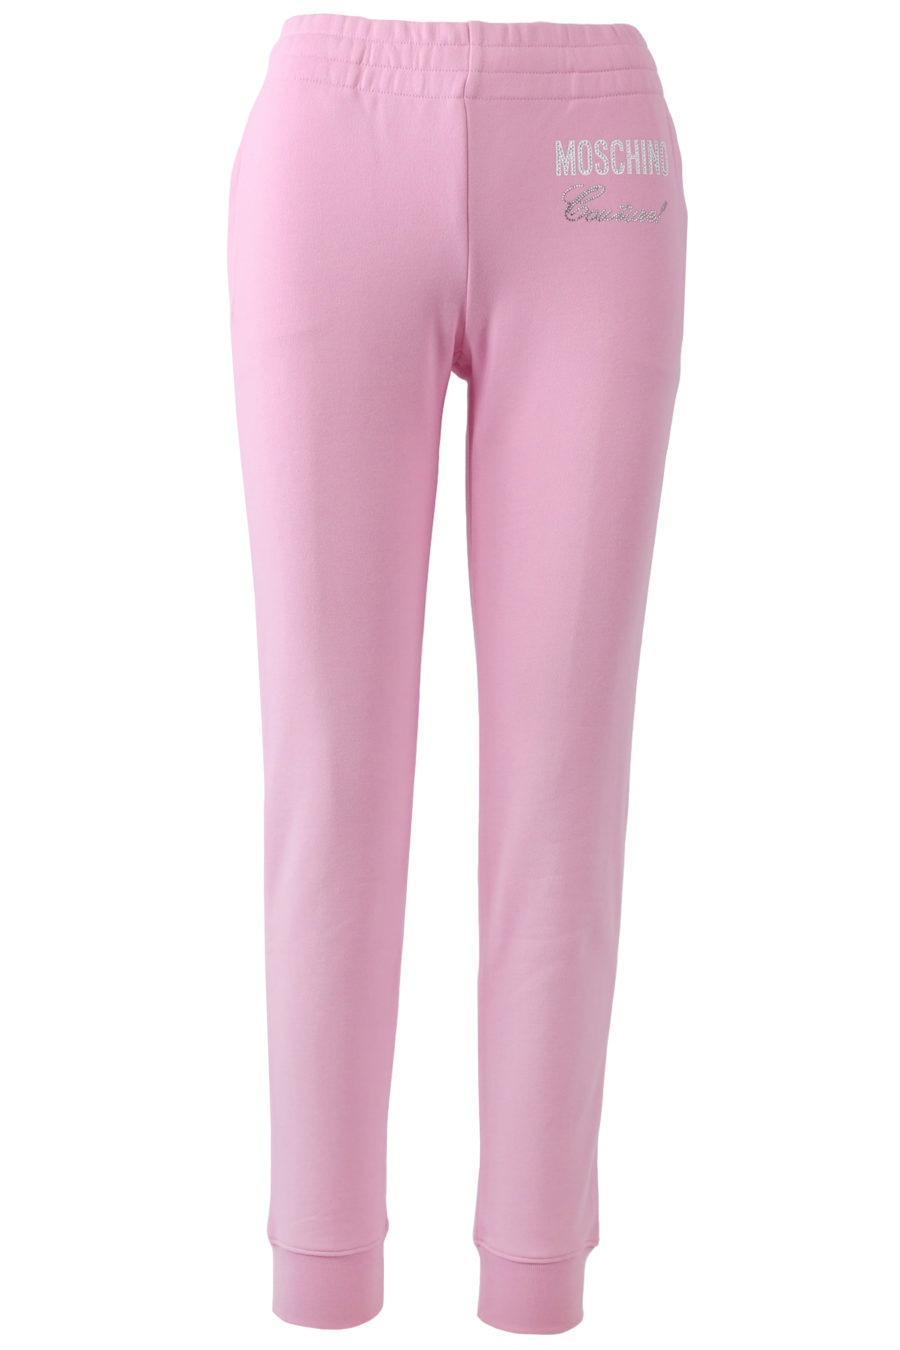 Pantalon rose avec logo en cristaux - copie IMG 7269